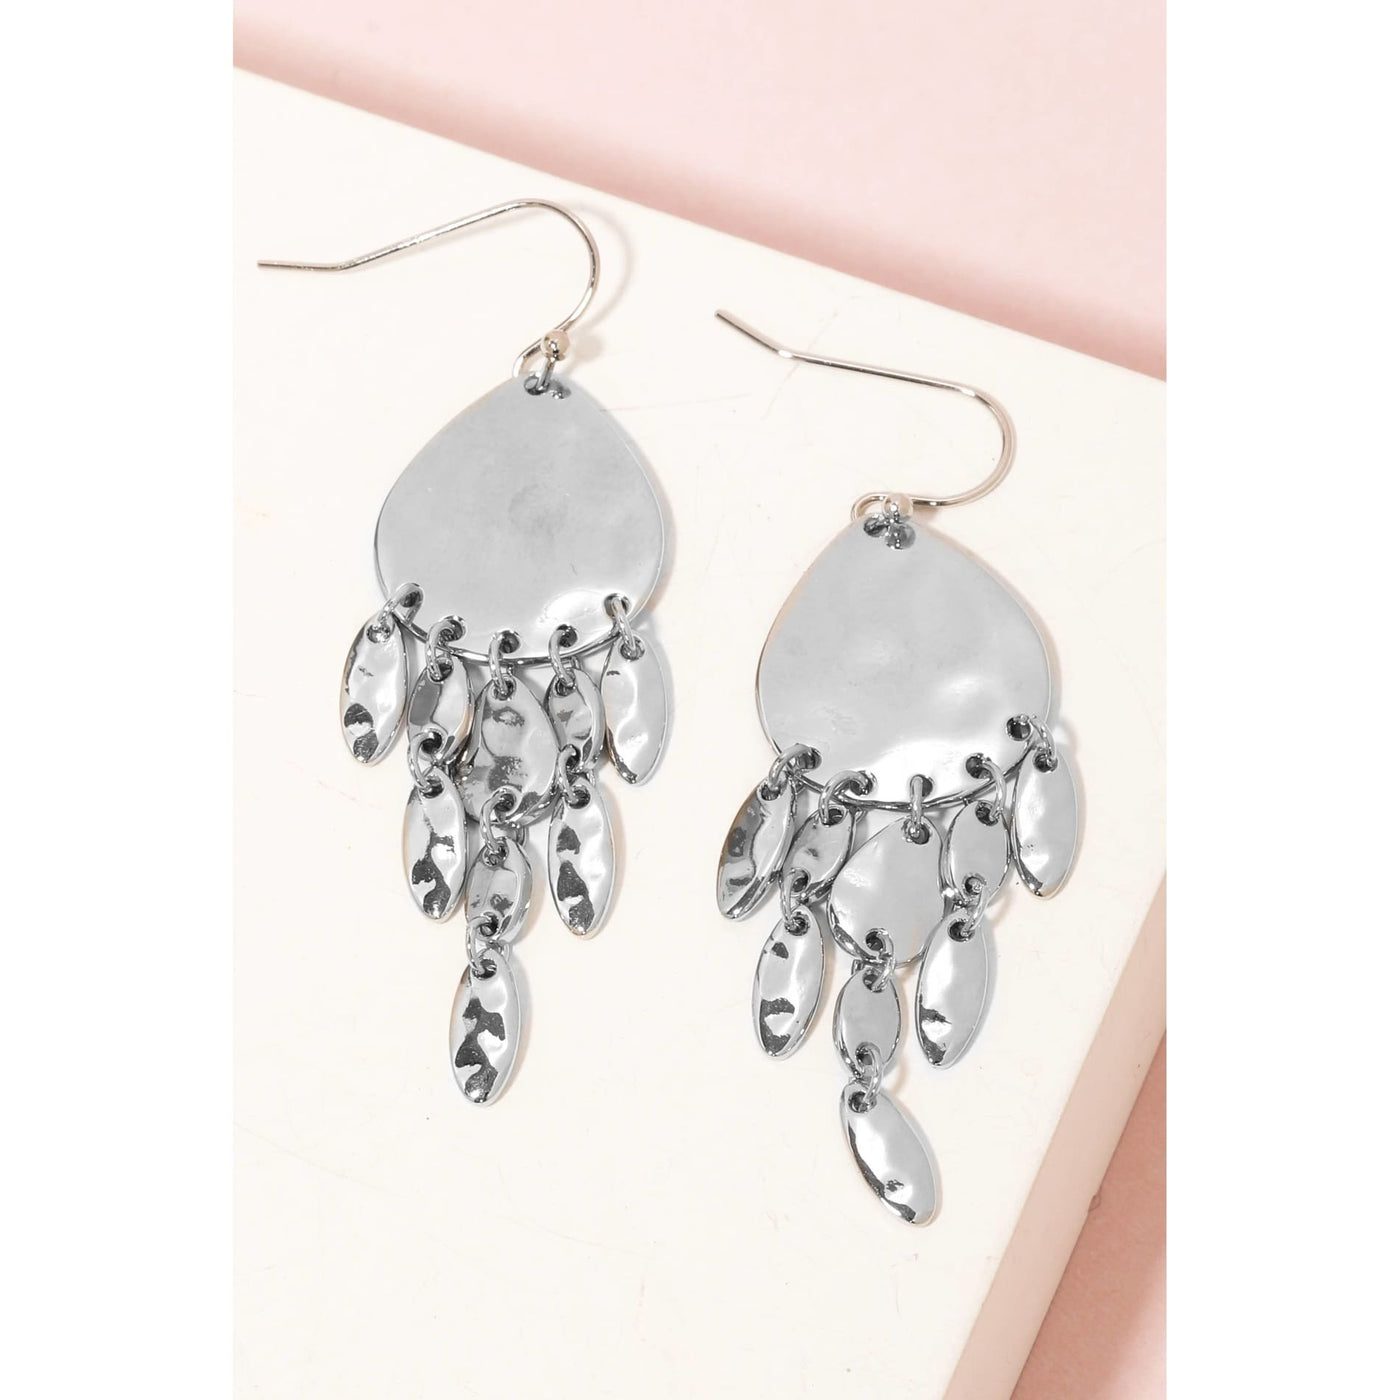 Metallic Oval Chain Fringe Hook Drop Earrings - Silver - 190 Jewelry